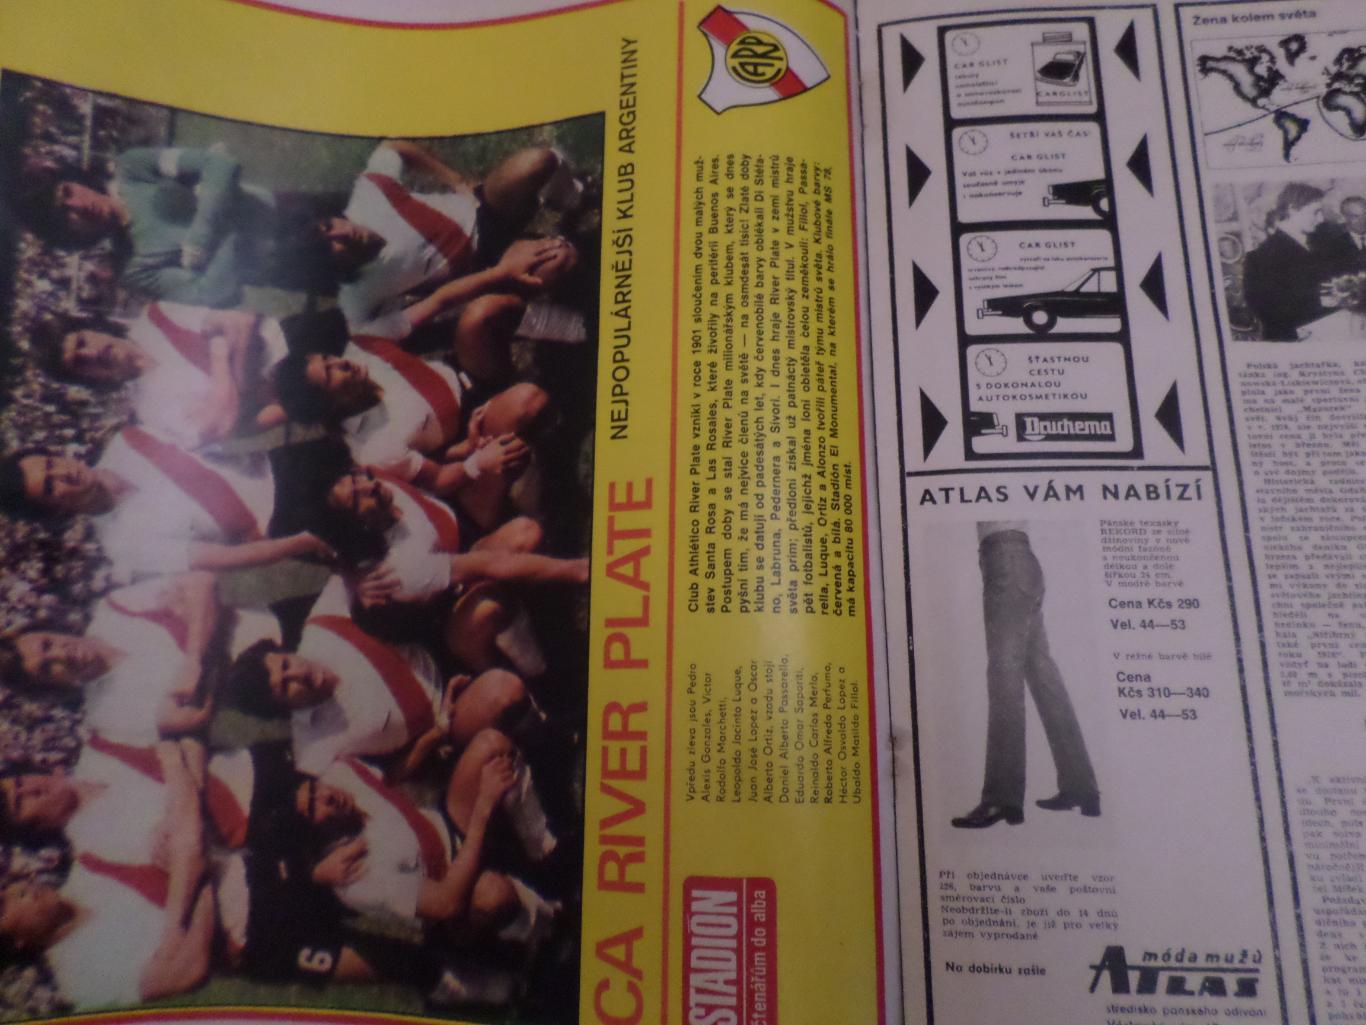 журнал Стадион Чехословакия № 18 1979 г постер Ривер Плэйт 1